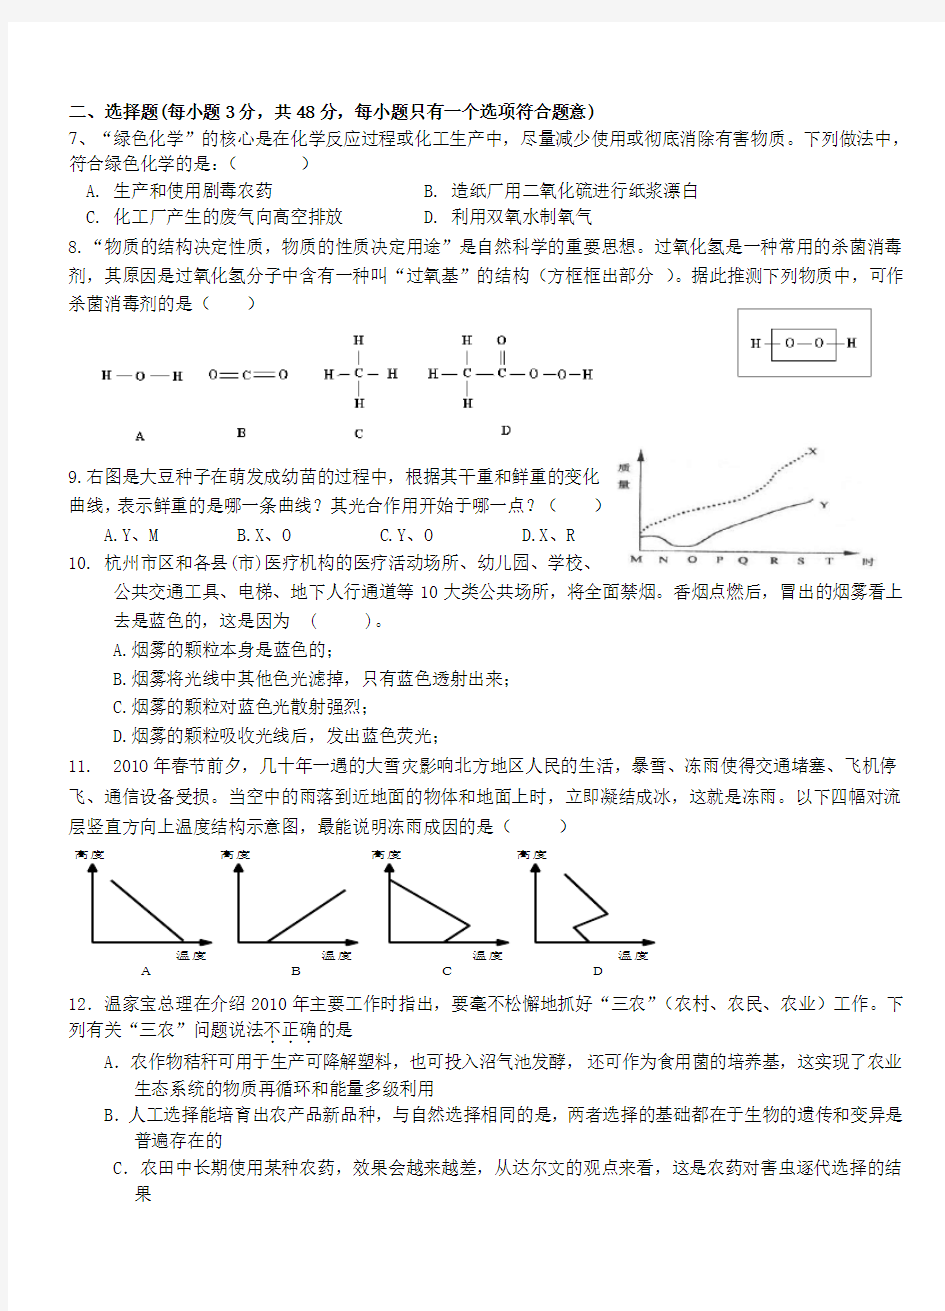 杭州市中考科学模拟试卷试题卷(含详细答案和评分标准)